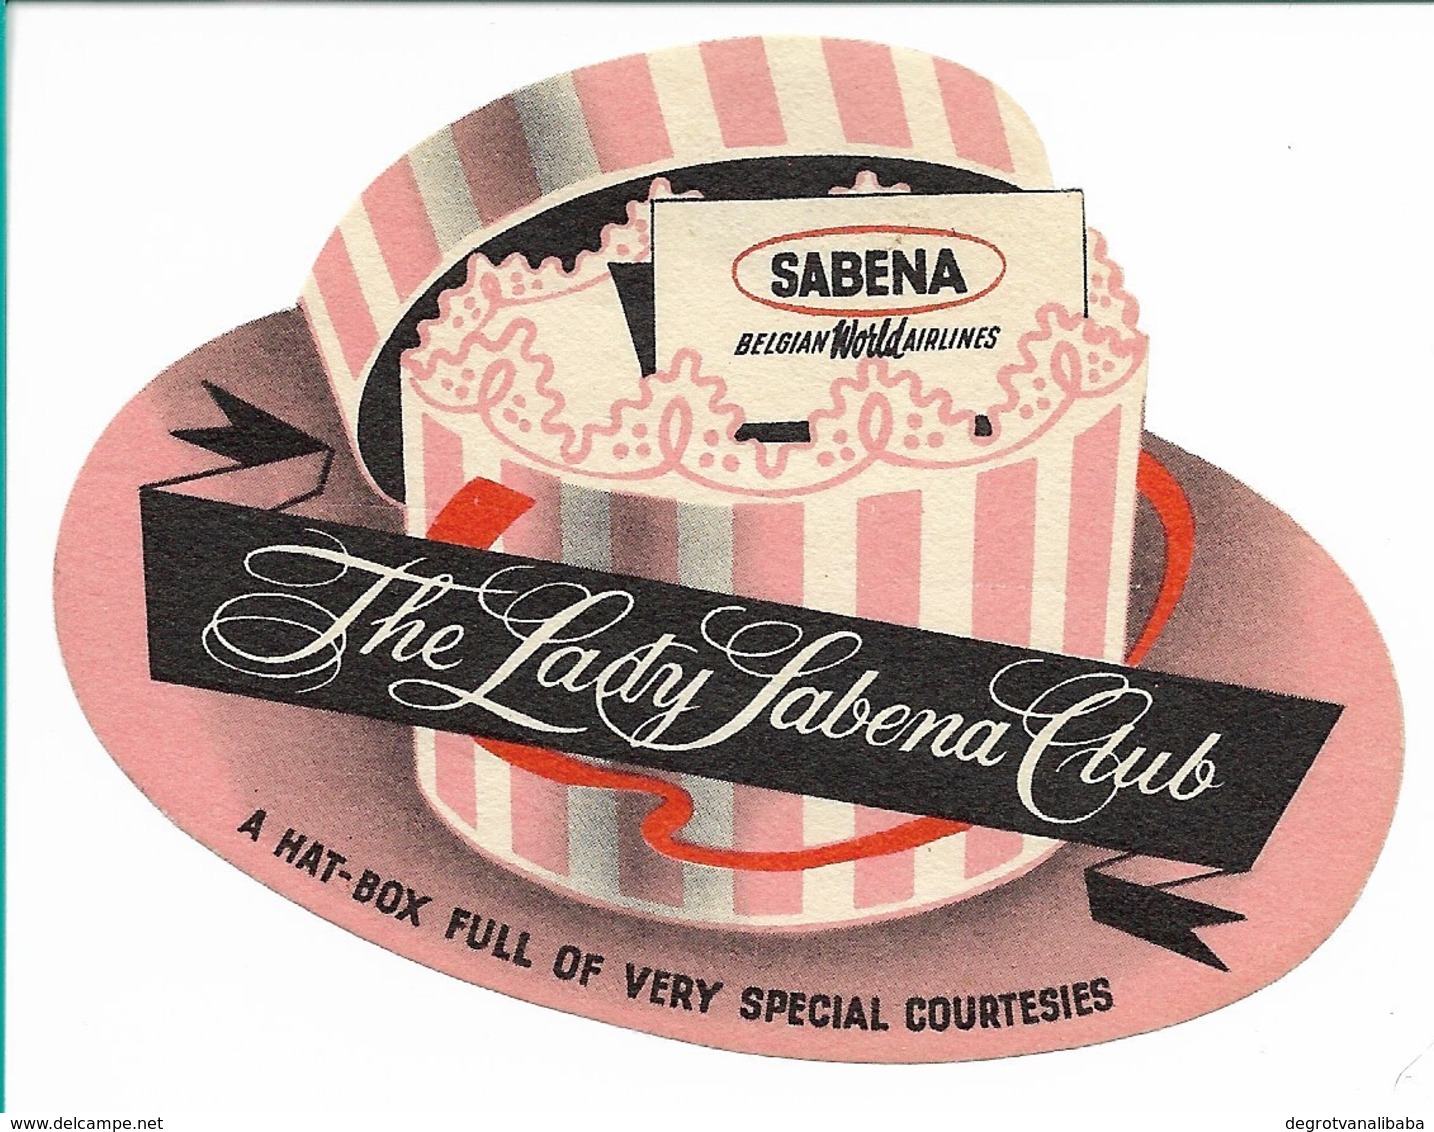 SABENA - Bagage Etiket: The Lady Sabena Club - Etichette Da Viaggio E Targhette